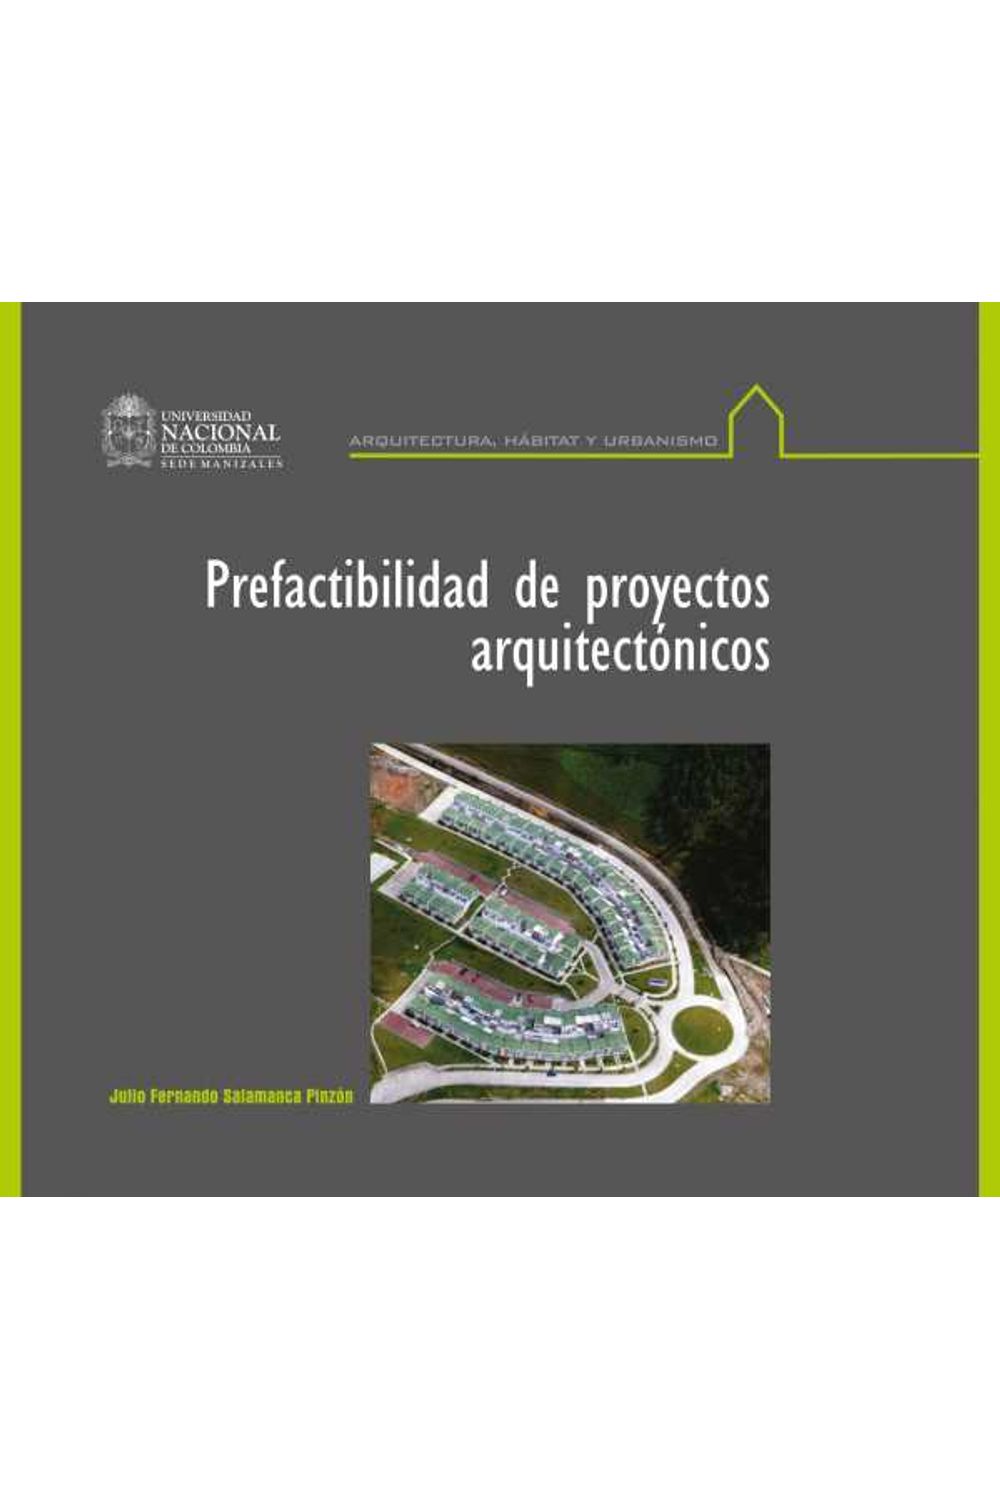 bw-prefactibilidad-de-proyectos-arquitectoacutenicos-universidad-nacional-de-colombia-9789587753264